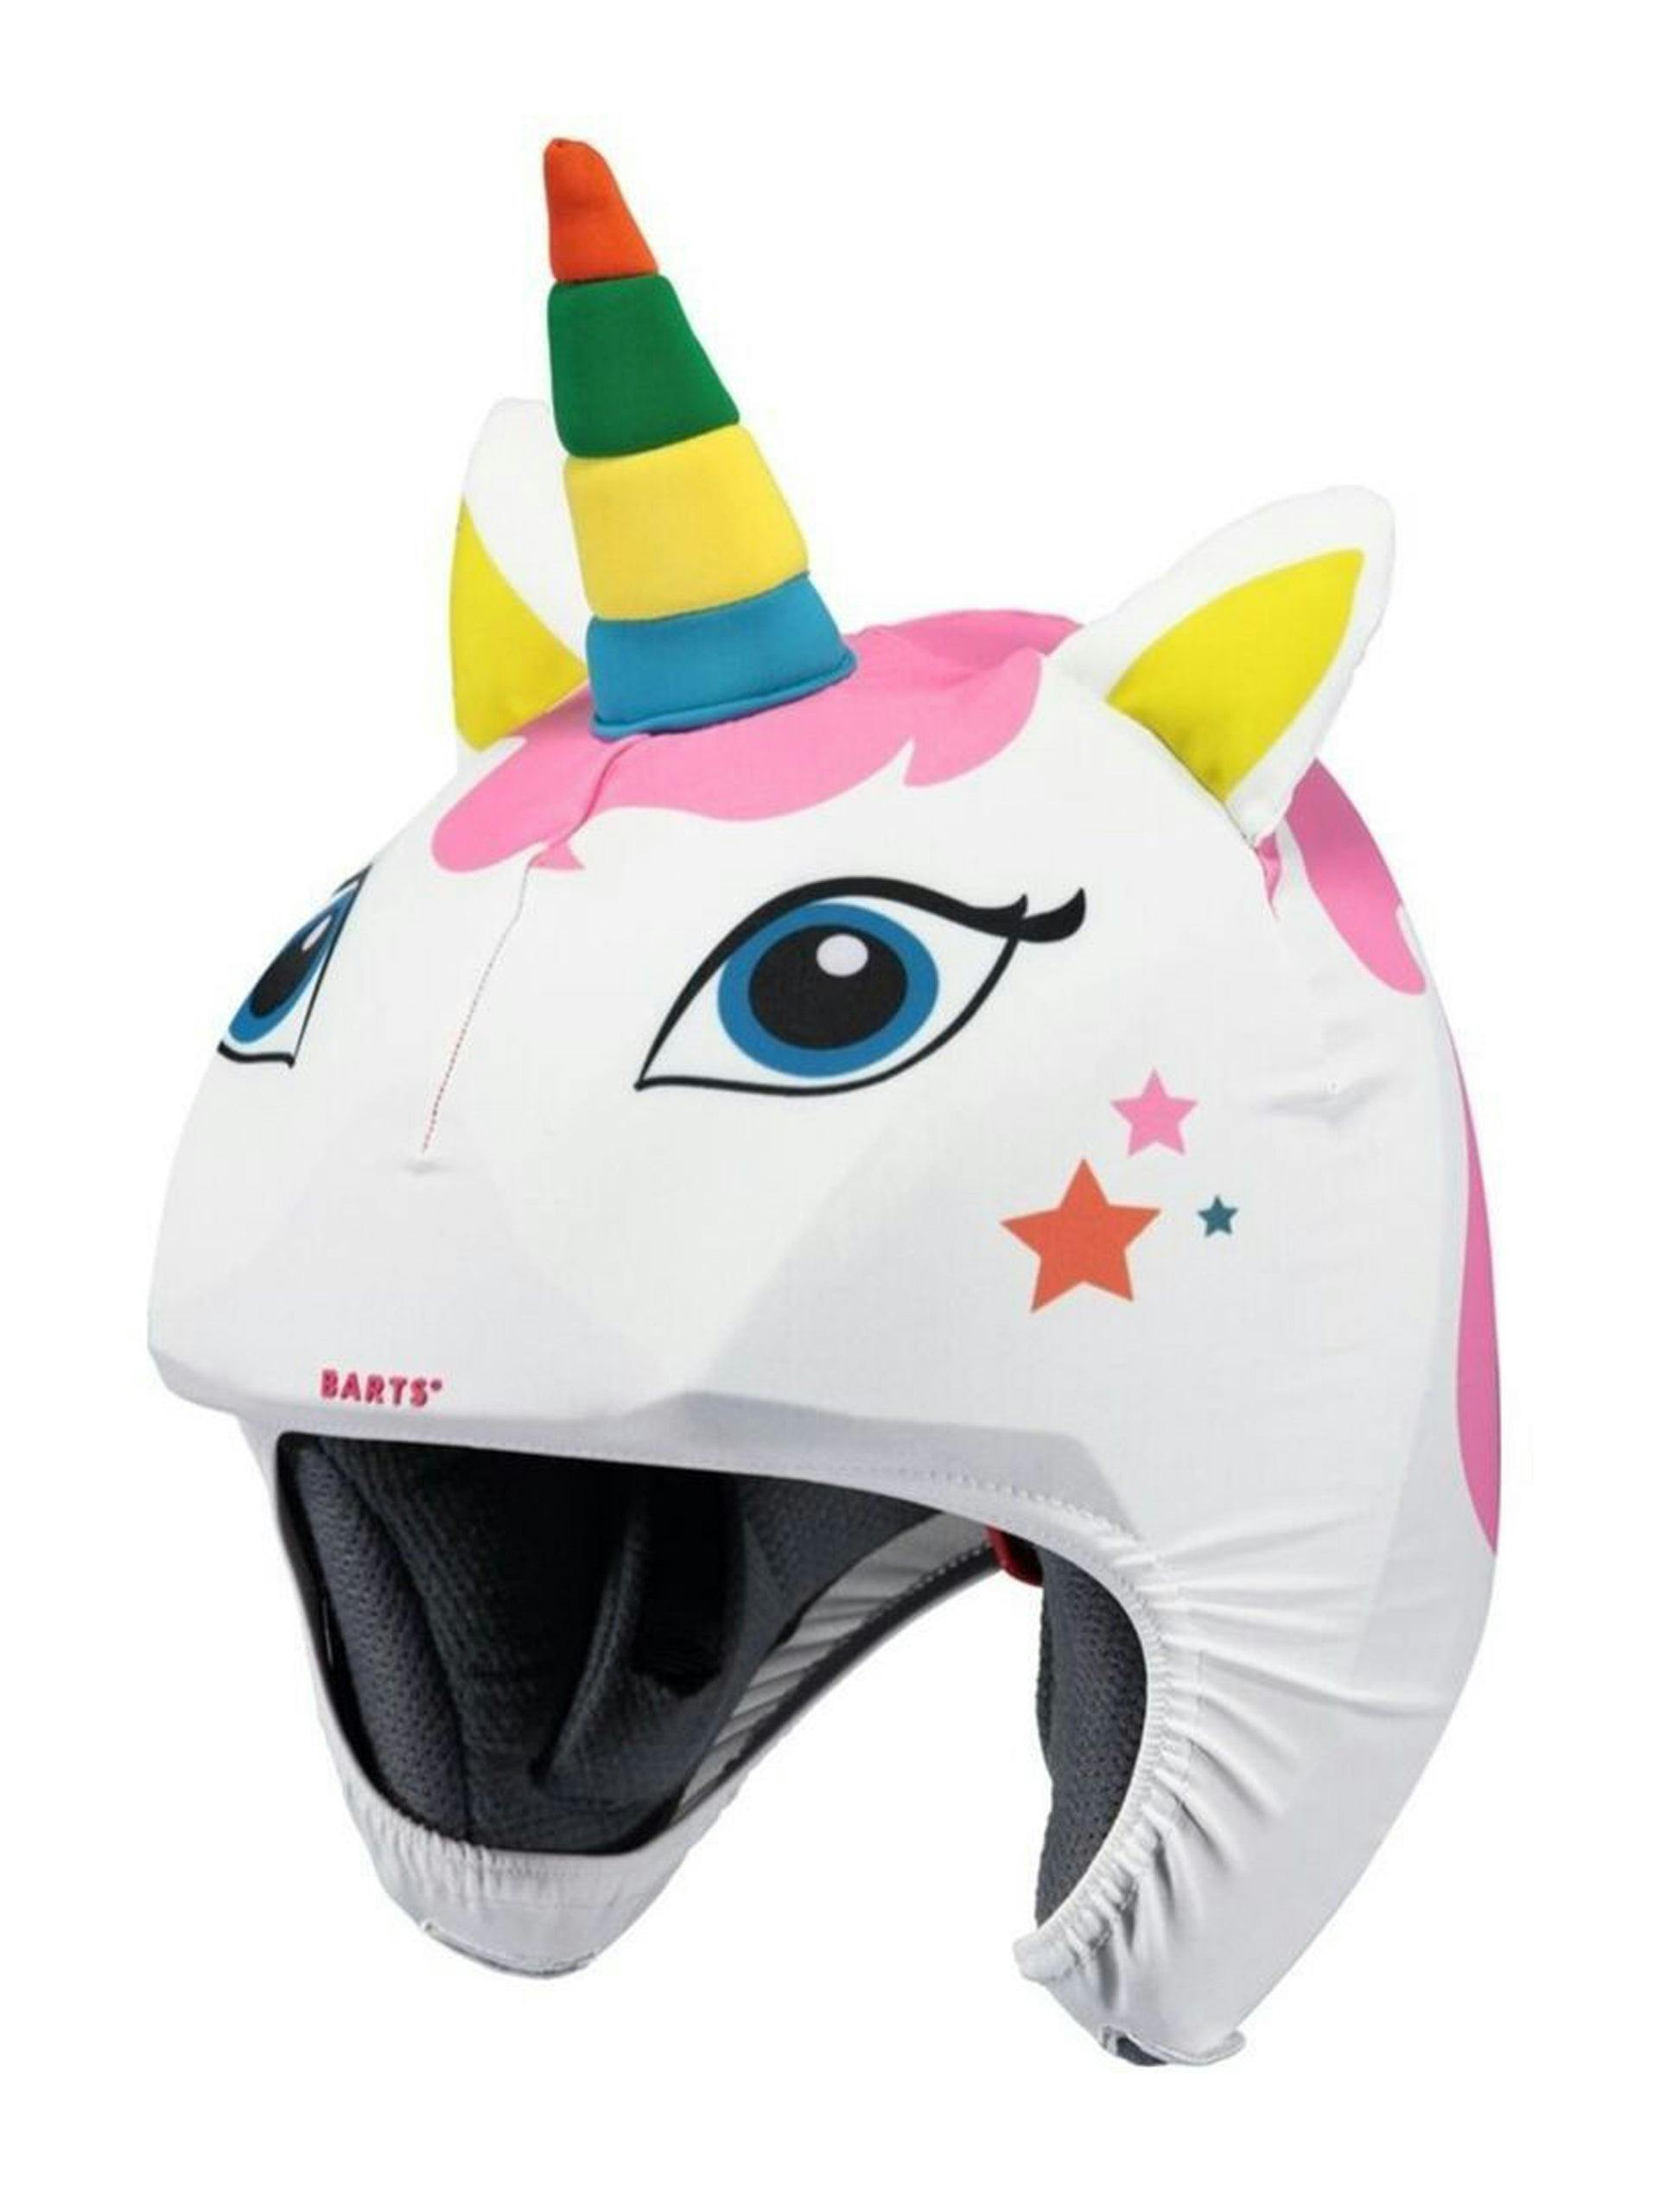 Unicorn helmet cover